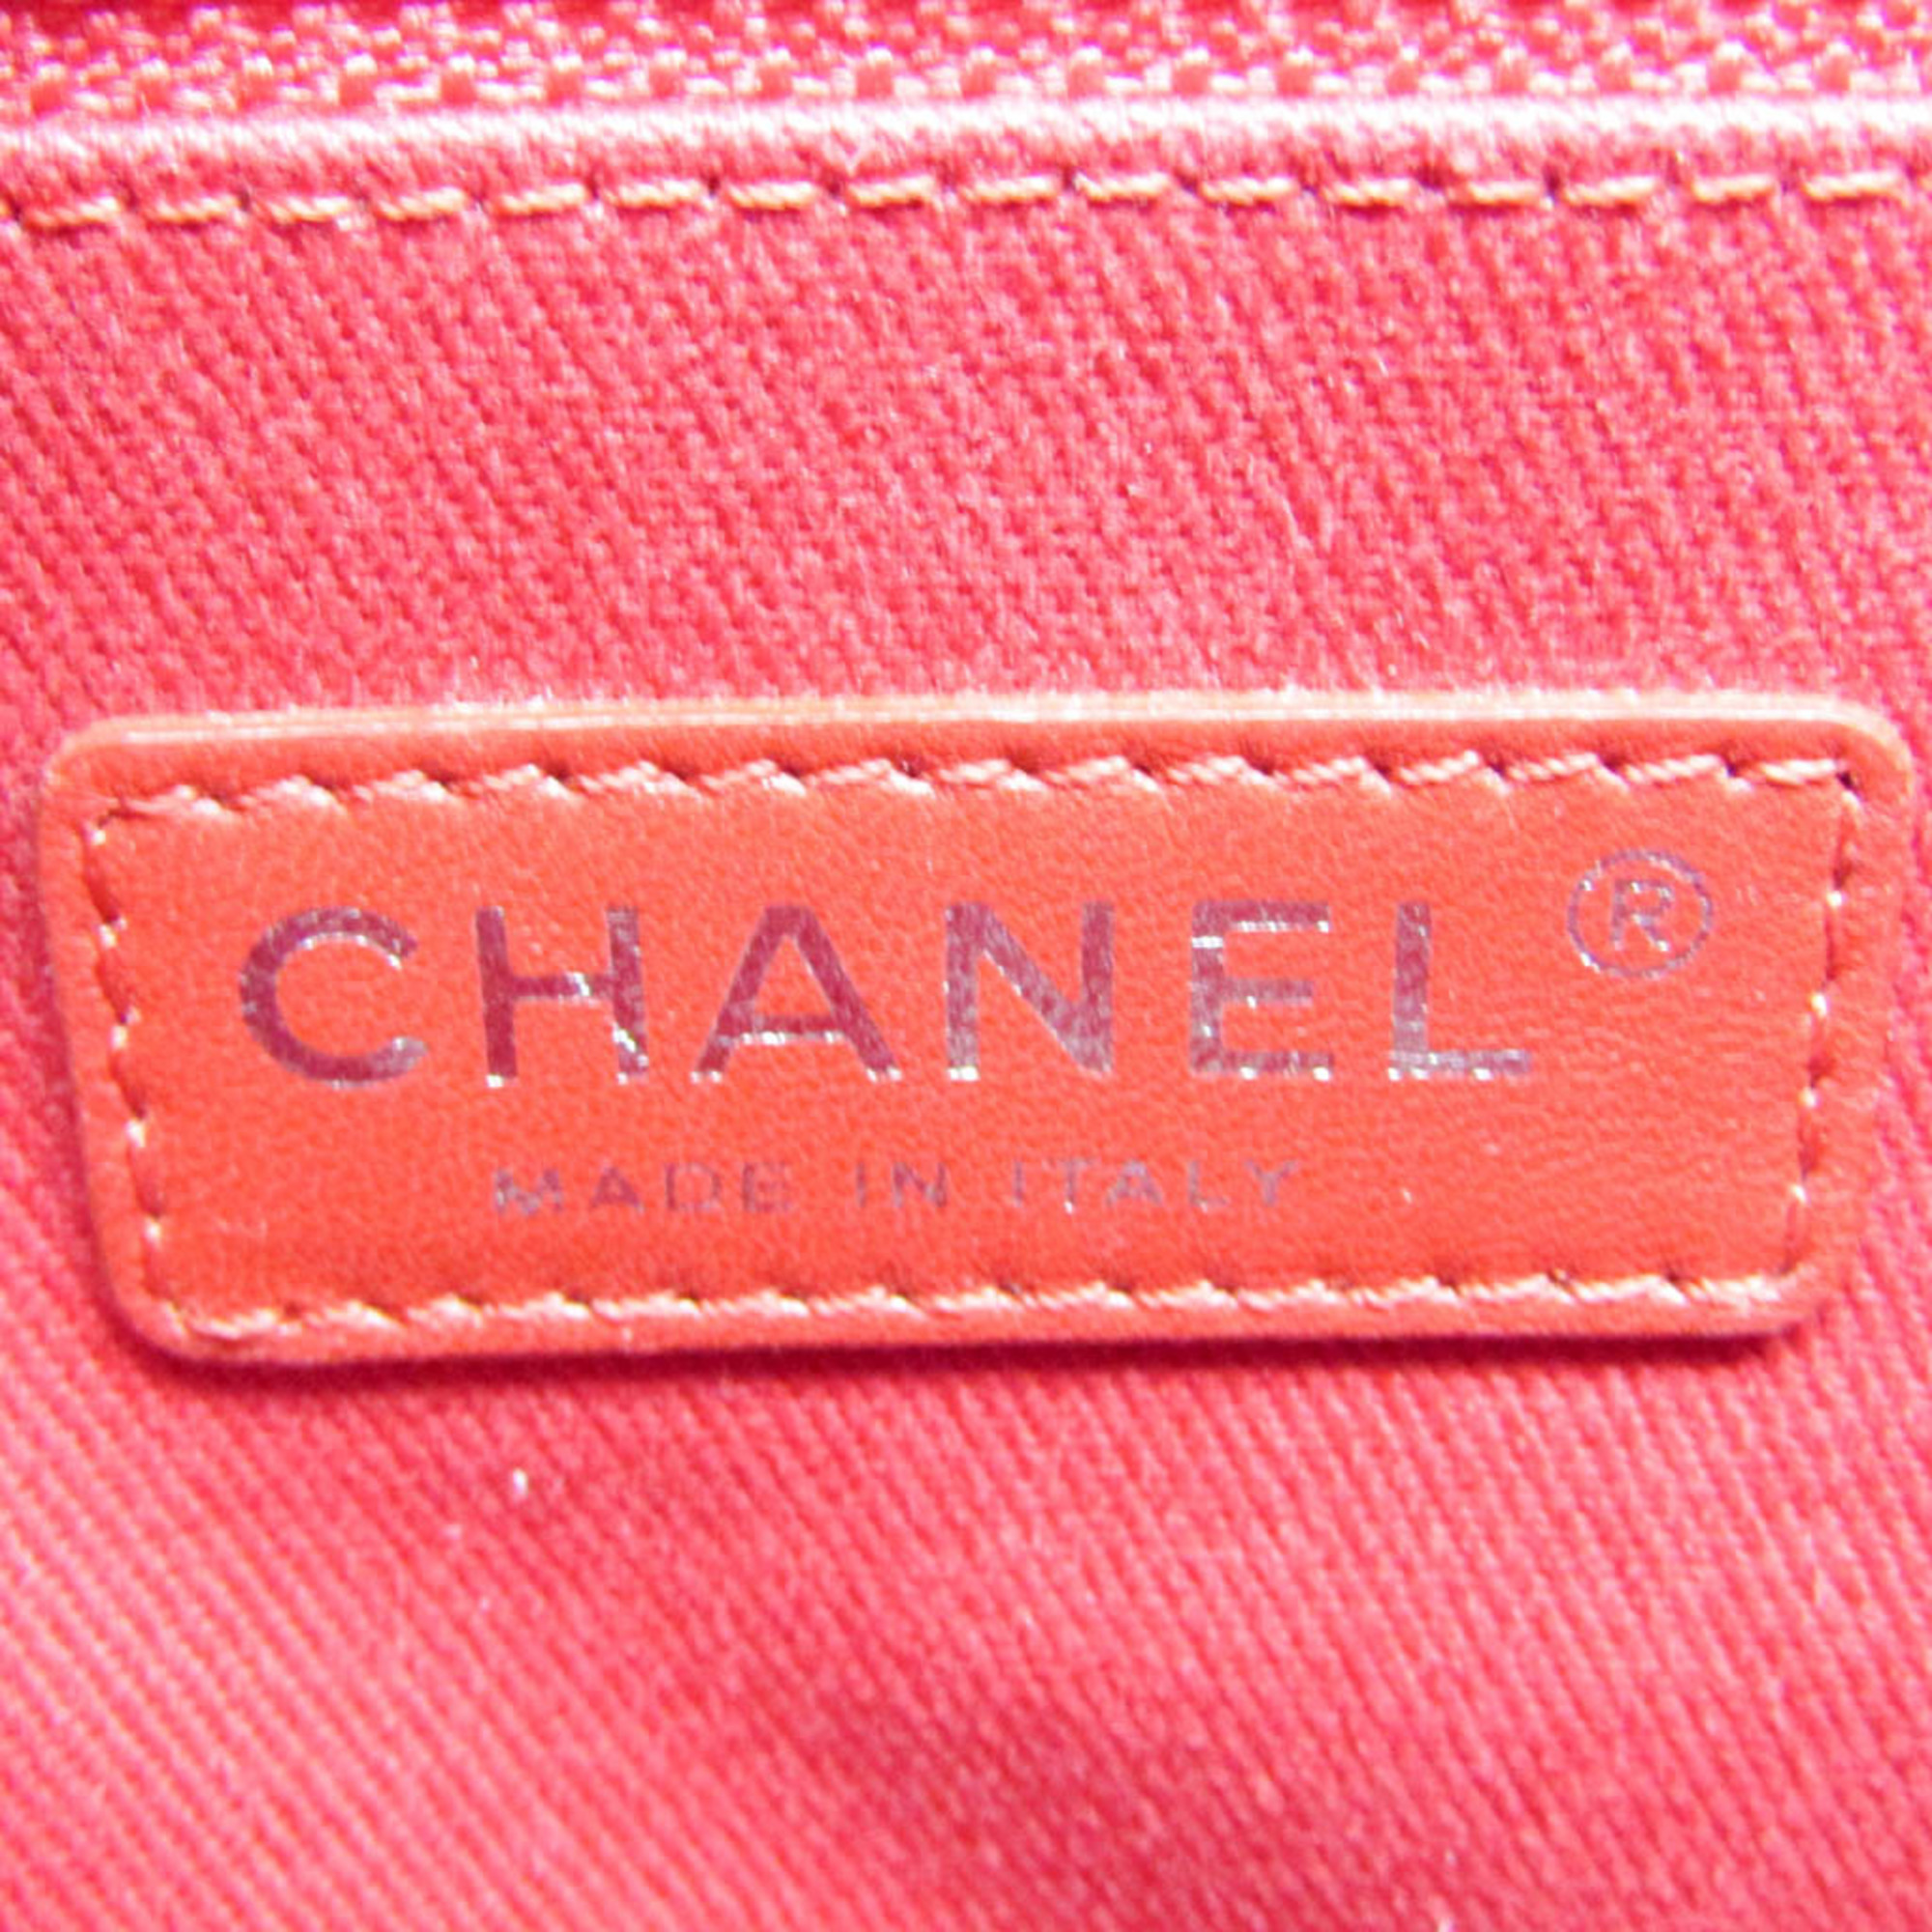 シャネル(Chanel) マトラッセ レディース スエード,レザー ショルダーバッグ ピンク,レッド